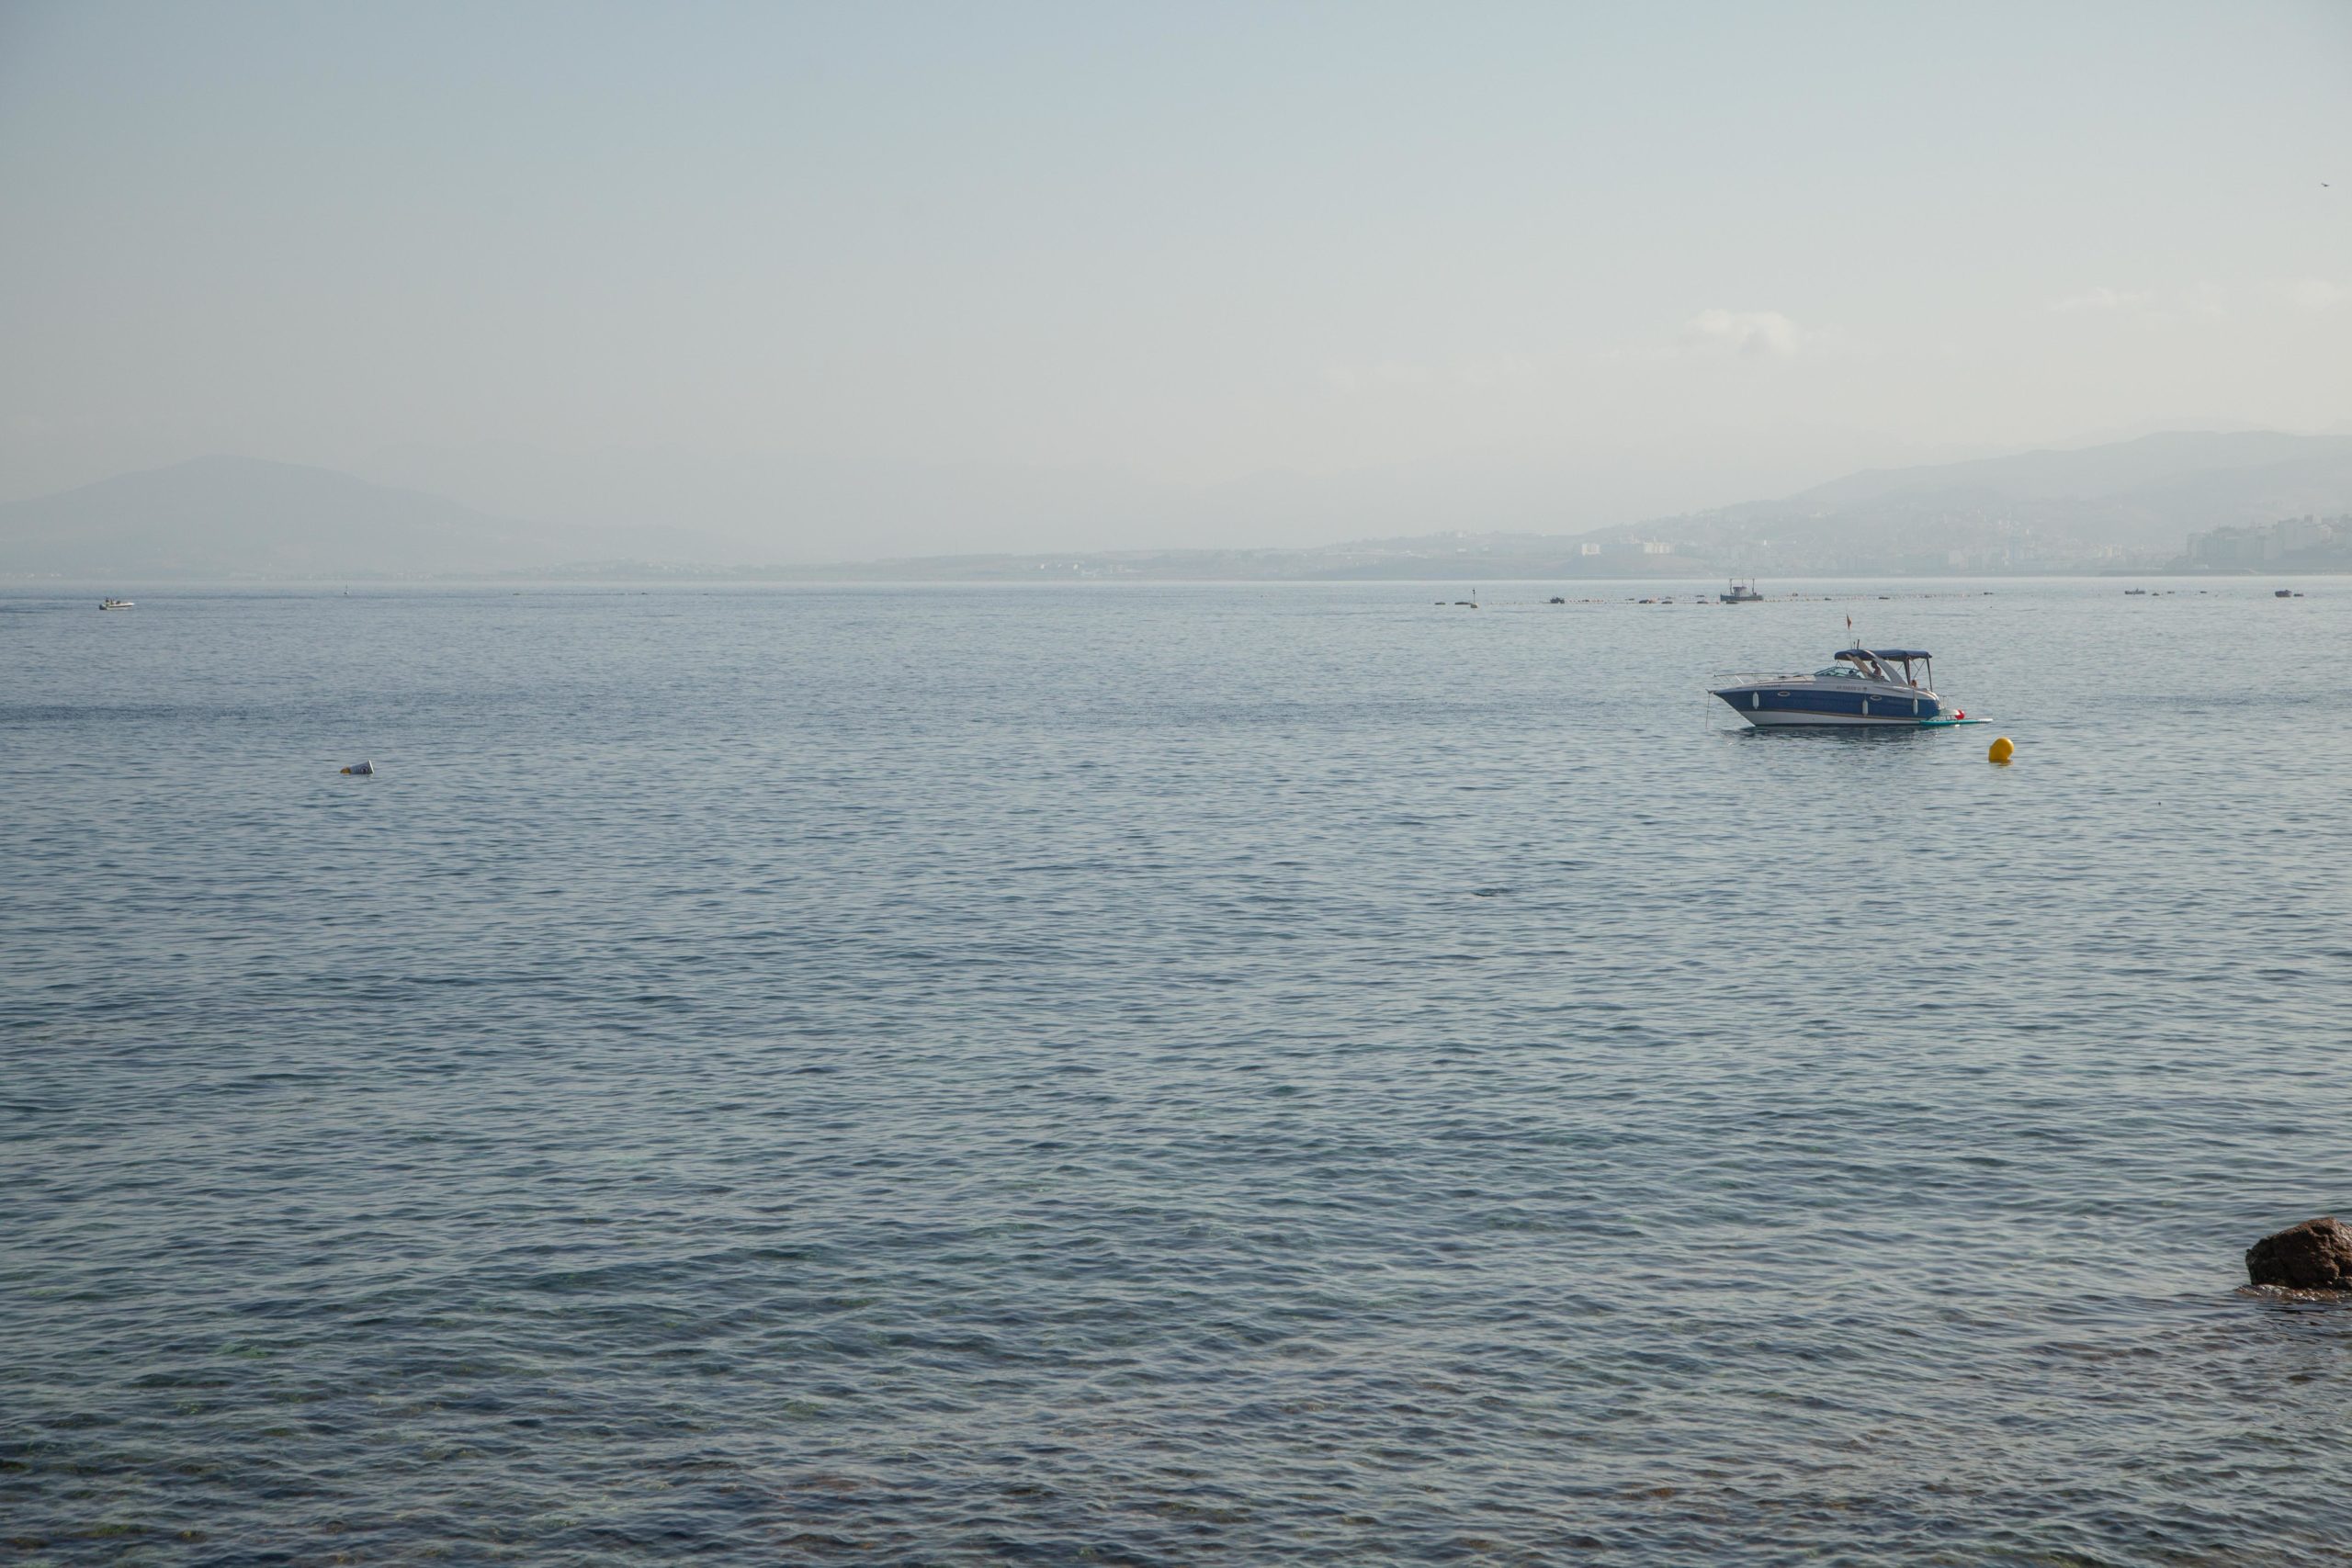 Canal de nado en Ceuta aguas abiertas